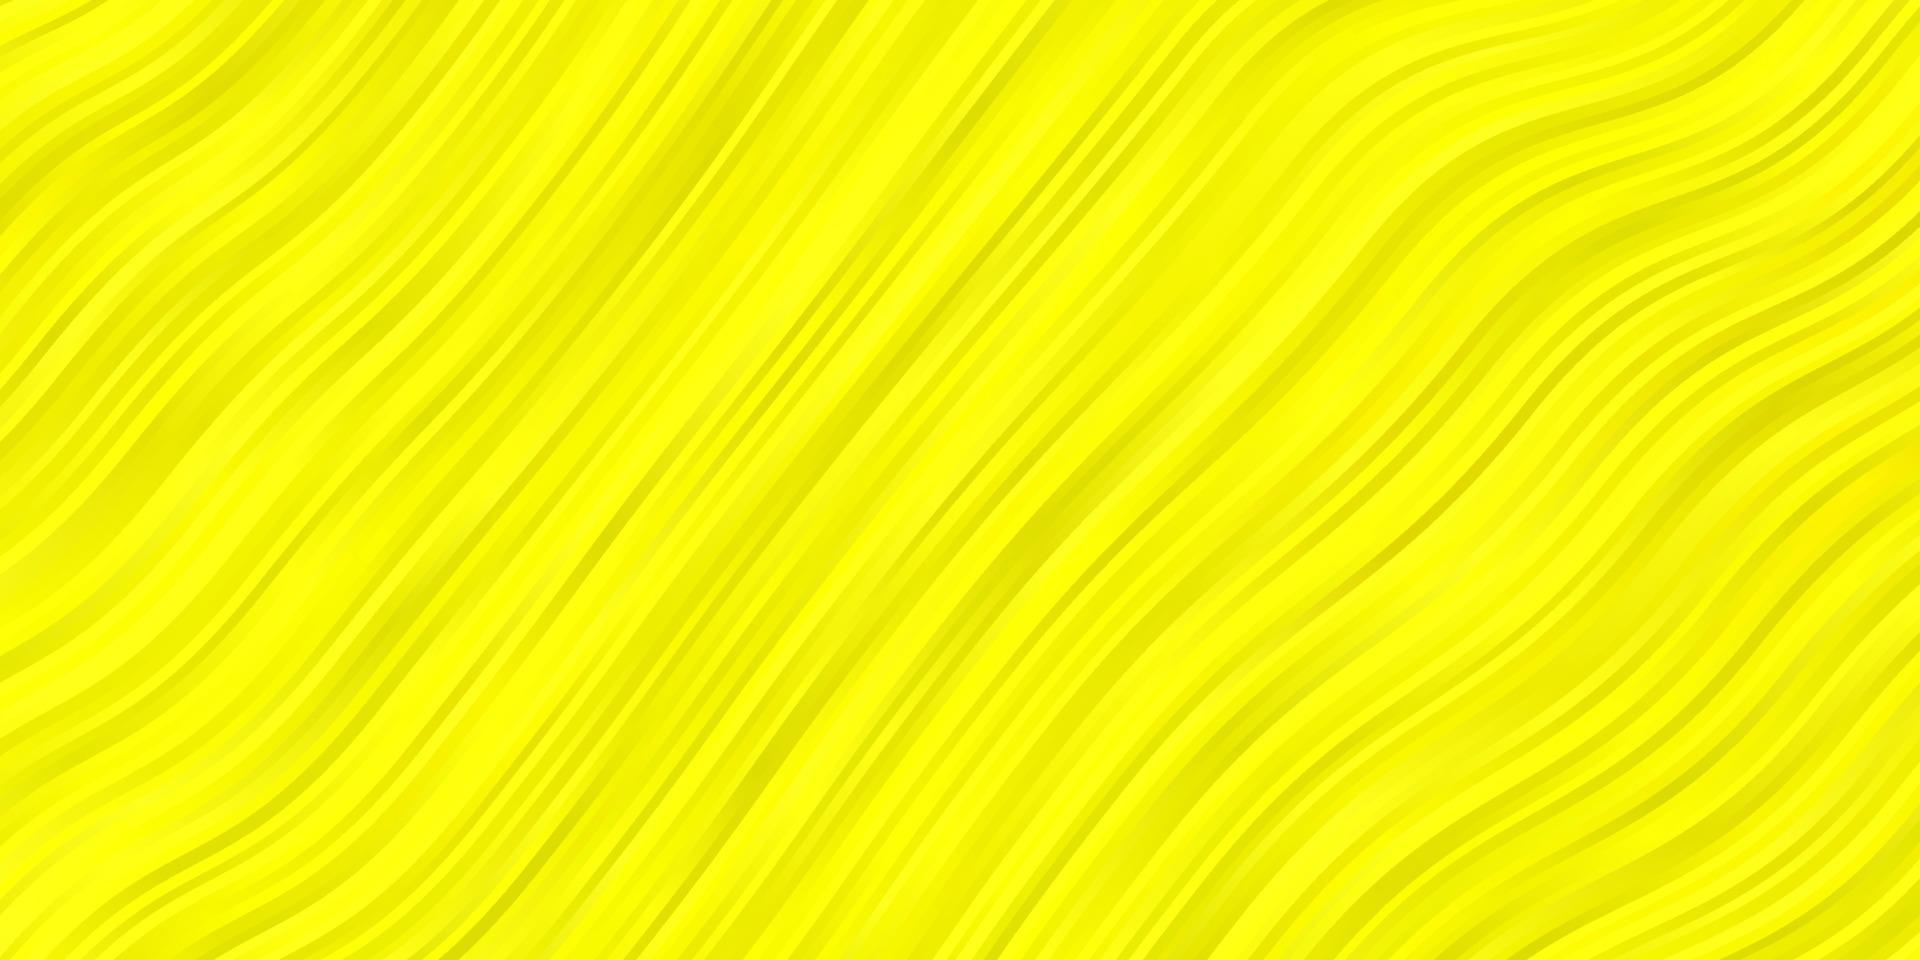 texture vecteur jaune clair avec arc circulaire.